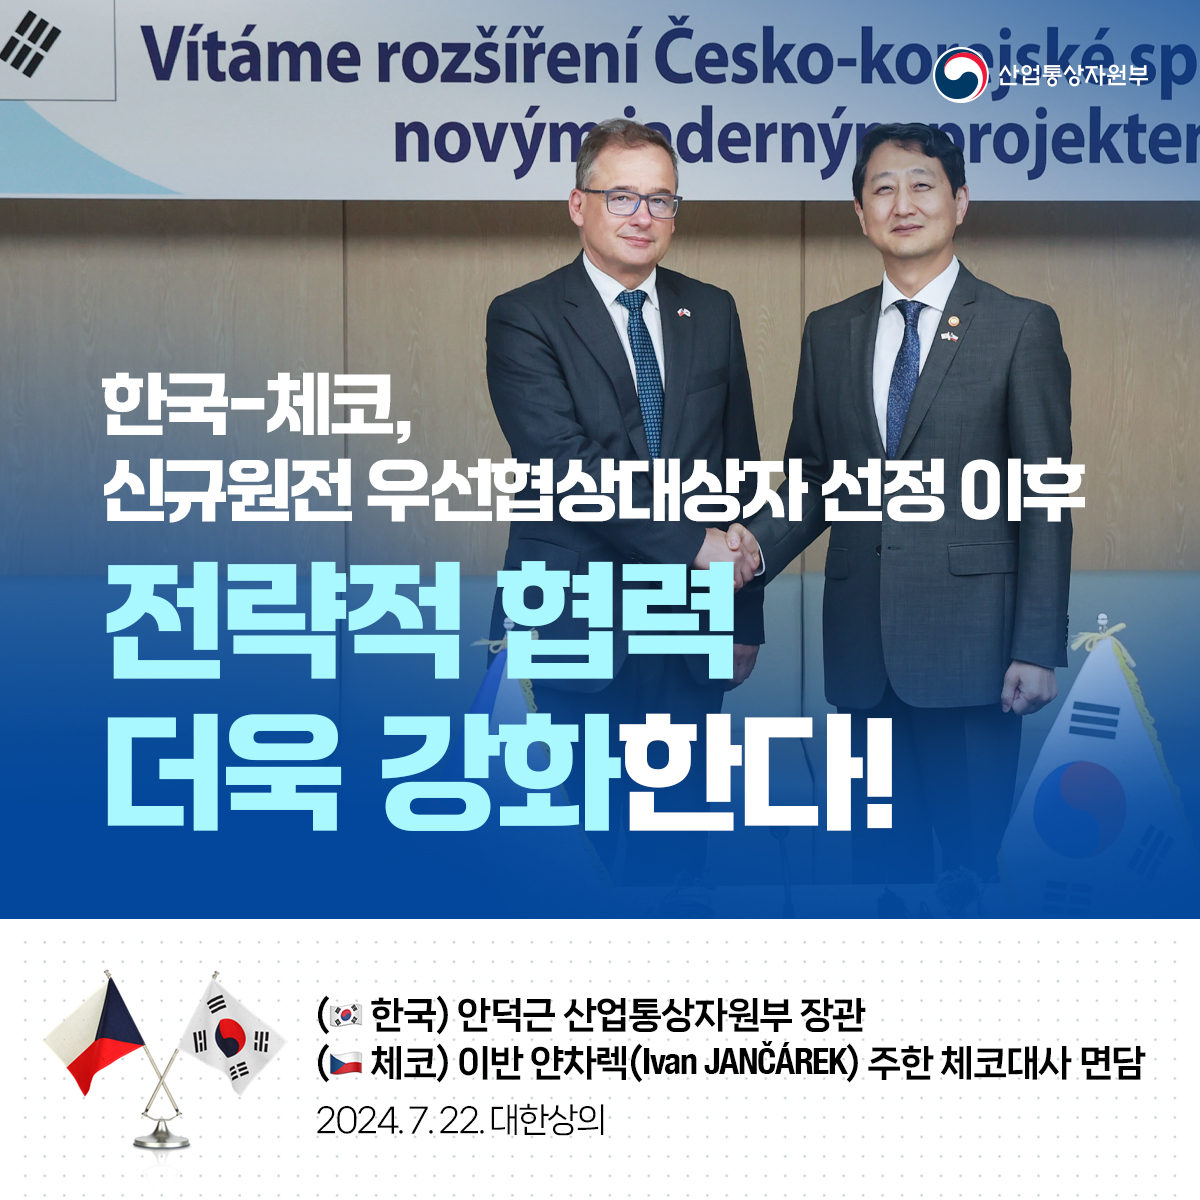 한국과 체코가 신규원전 우선협상대상자 선정 이후 전략적 협력을 더욱 강화합니다.